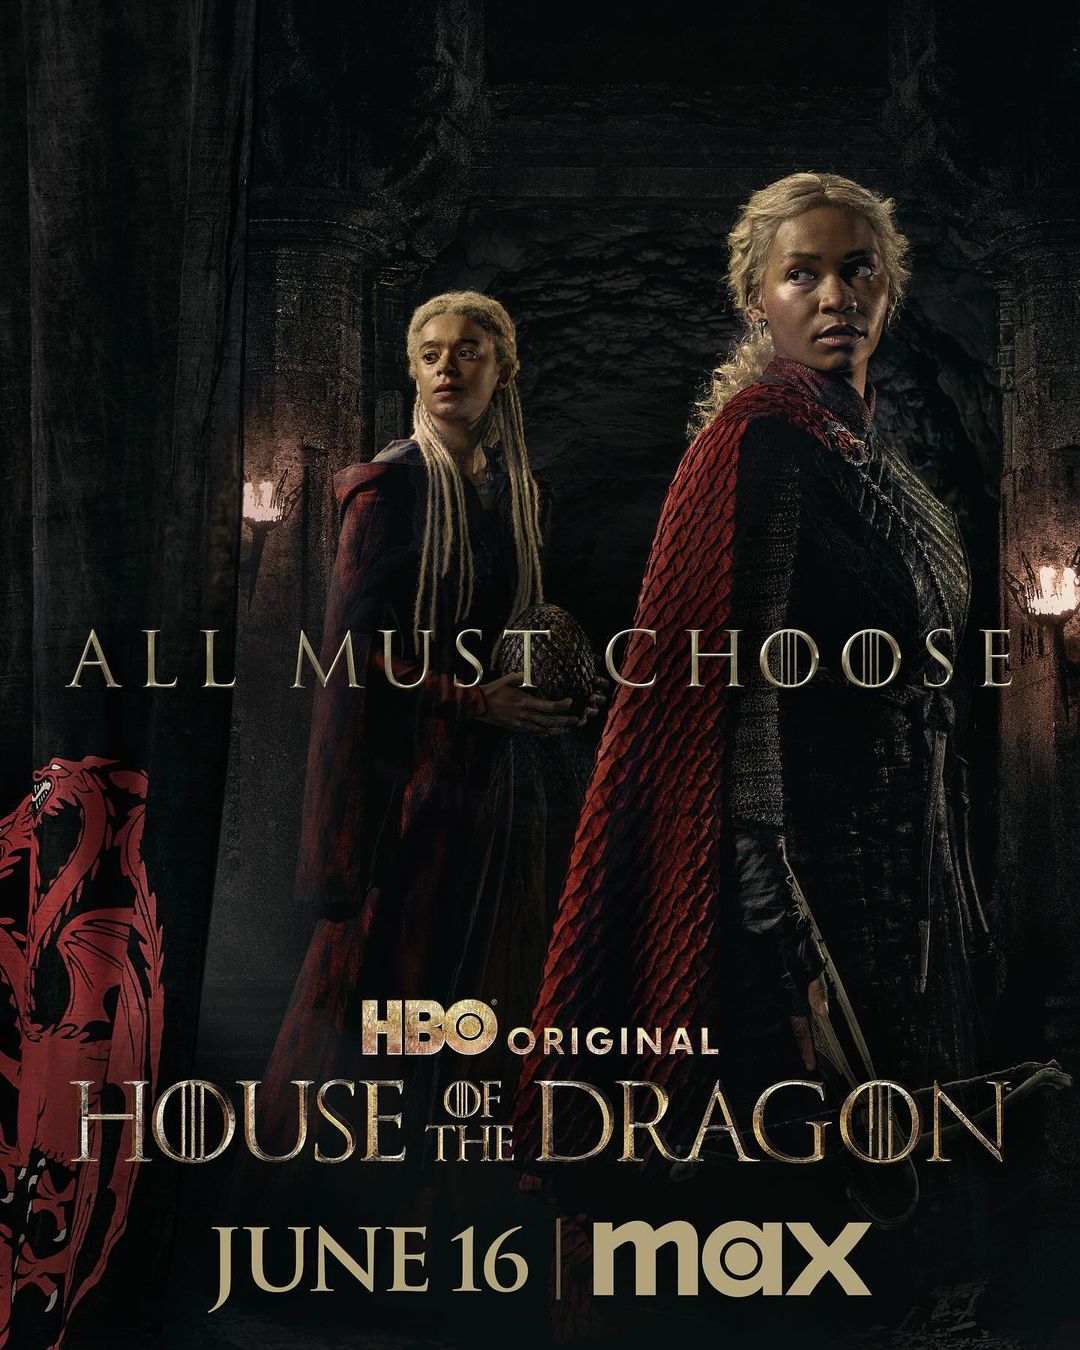           A Casa do Dragão: 2ª temporada ganha novos cartazes individuais, confira          